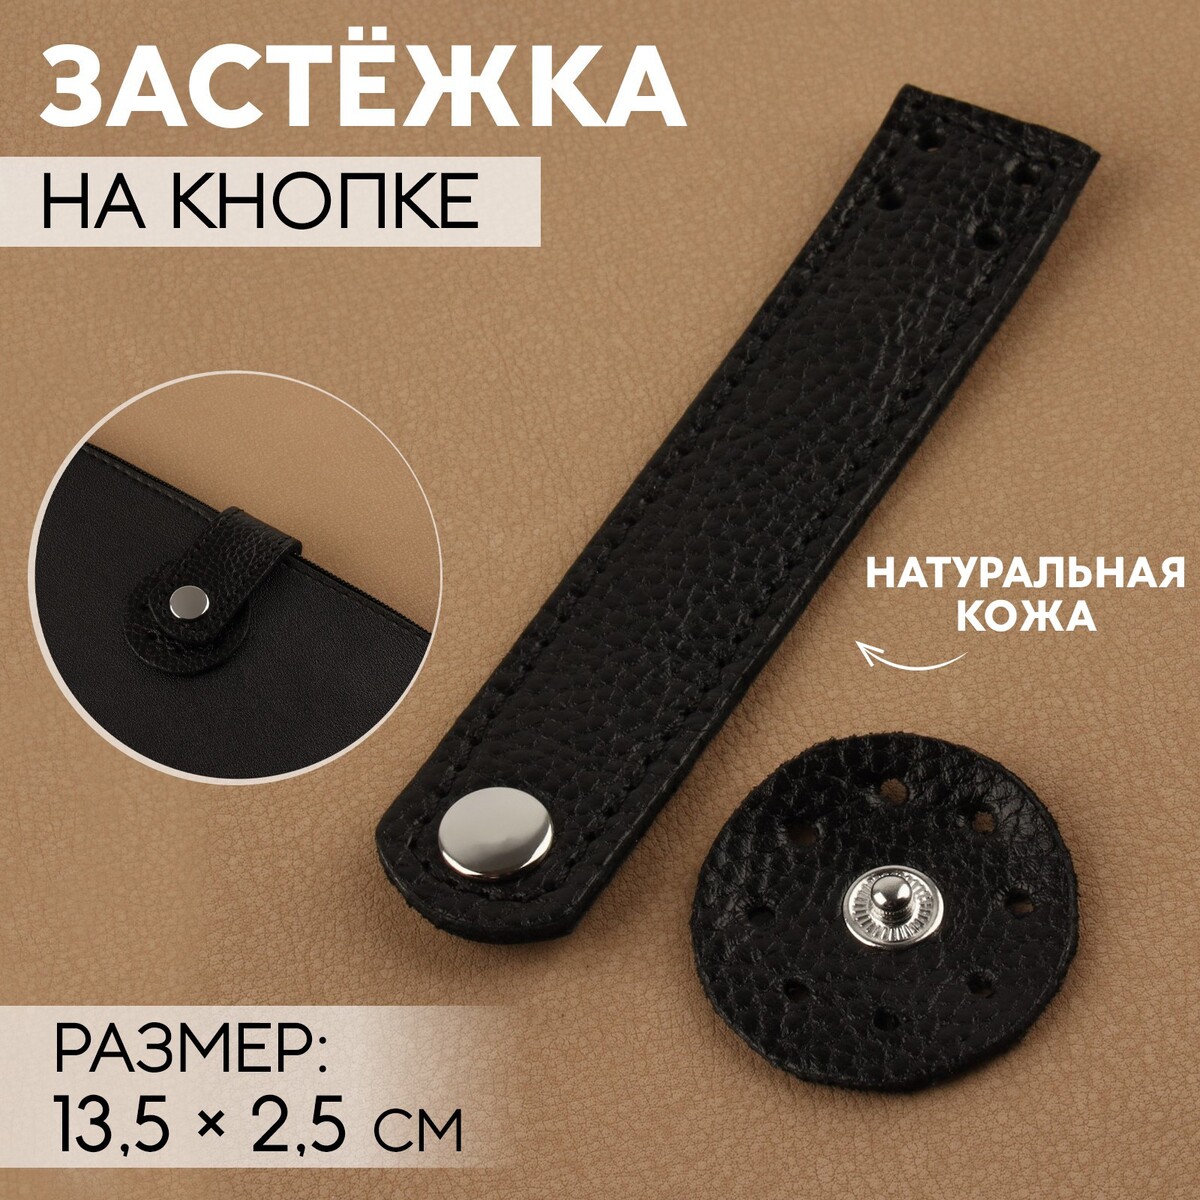 Застежка пришивная для сумки, на кнопке, из натуральной кожи, 13,5 × 2,5 см, цвет черный/серебряный